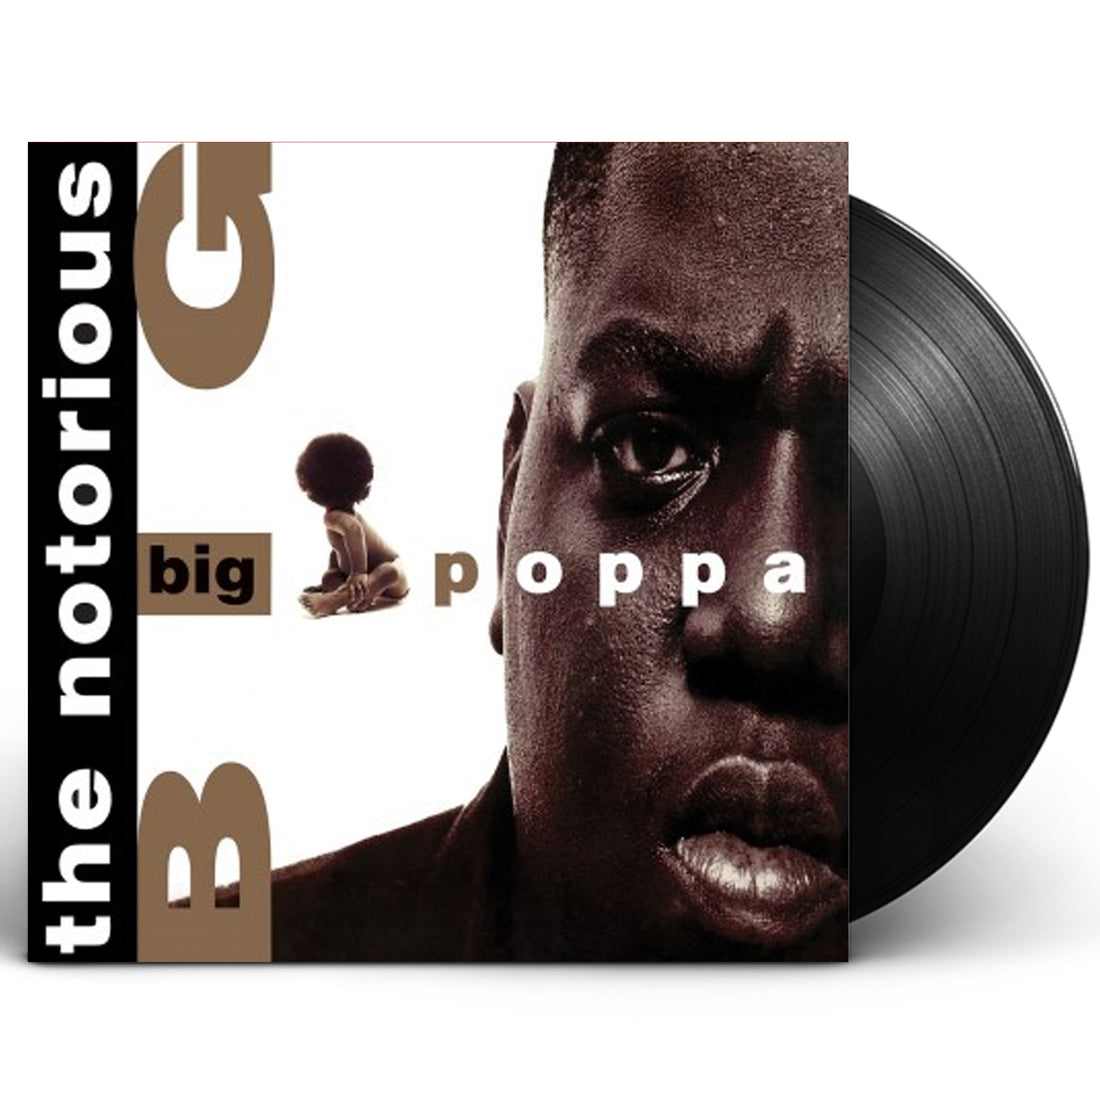 The Notorious B.I.G. "Big Poppa" 12" Vinyl